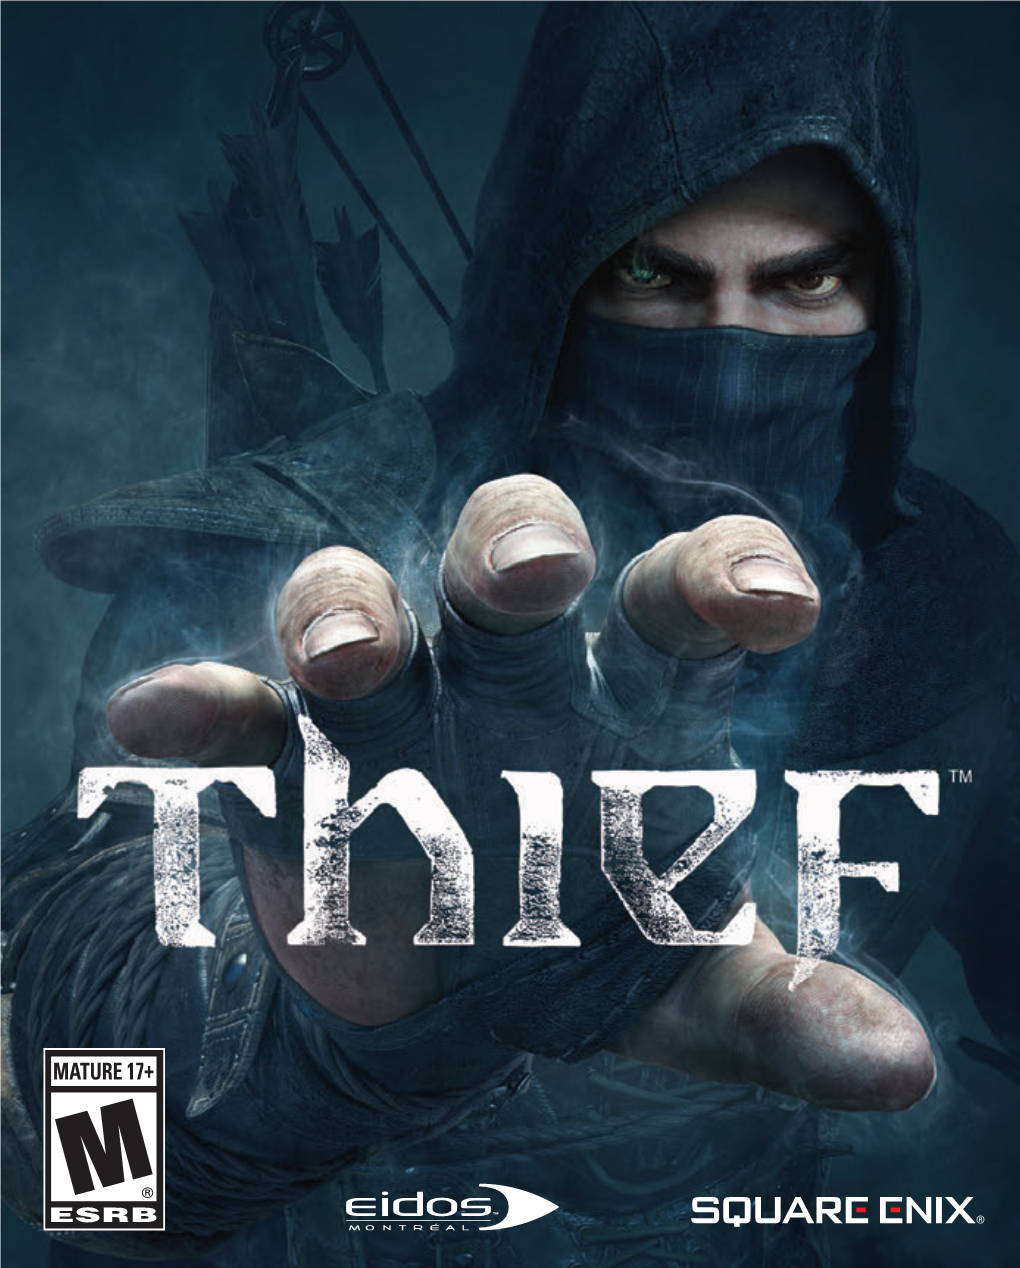 THIEF PS3 Manual